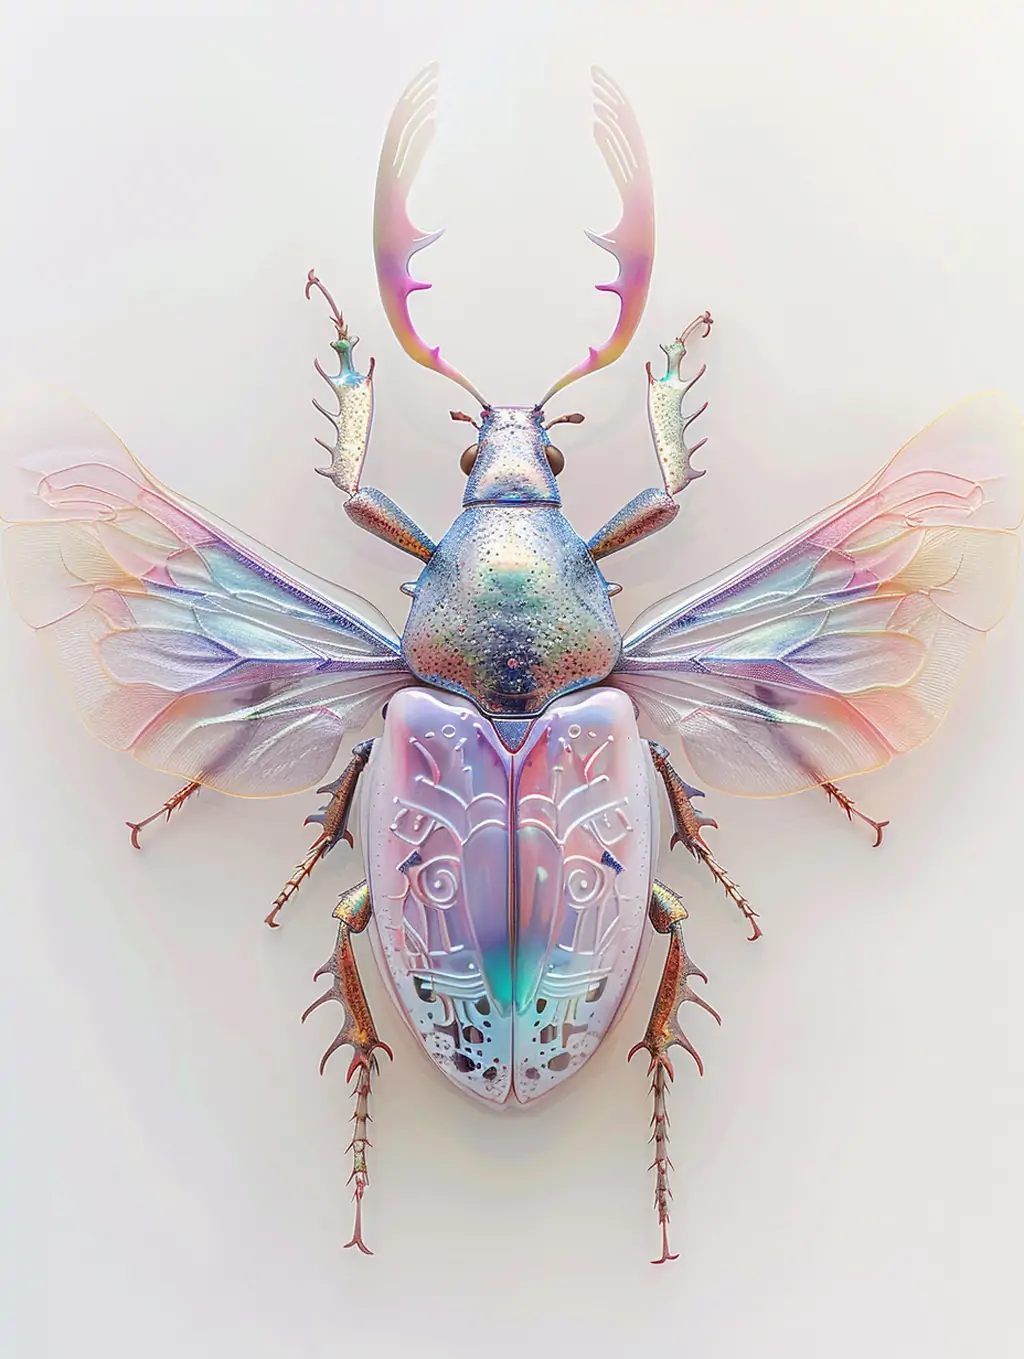 超现实主义瓷犀甲虫昆虫动物艺术图案机械模型midjourney关键词咒语 - Ai宇宙吧--Ai宇宙吧-